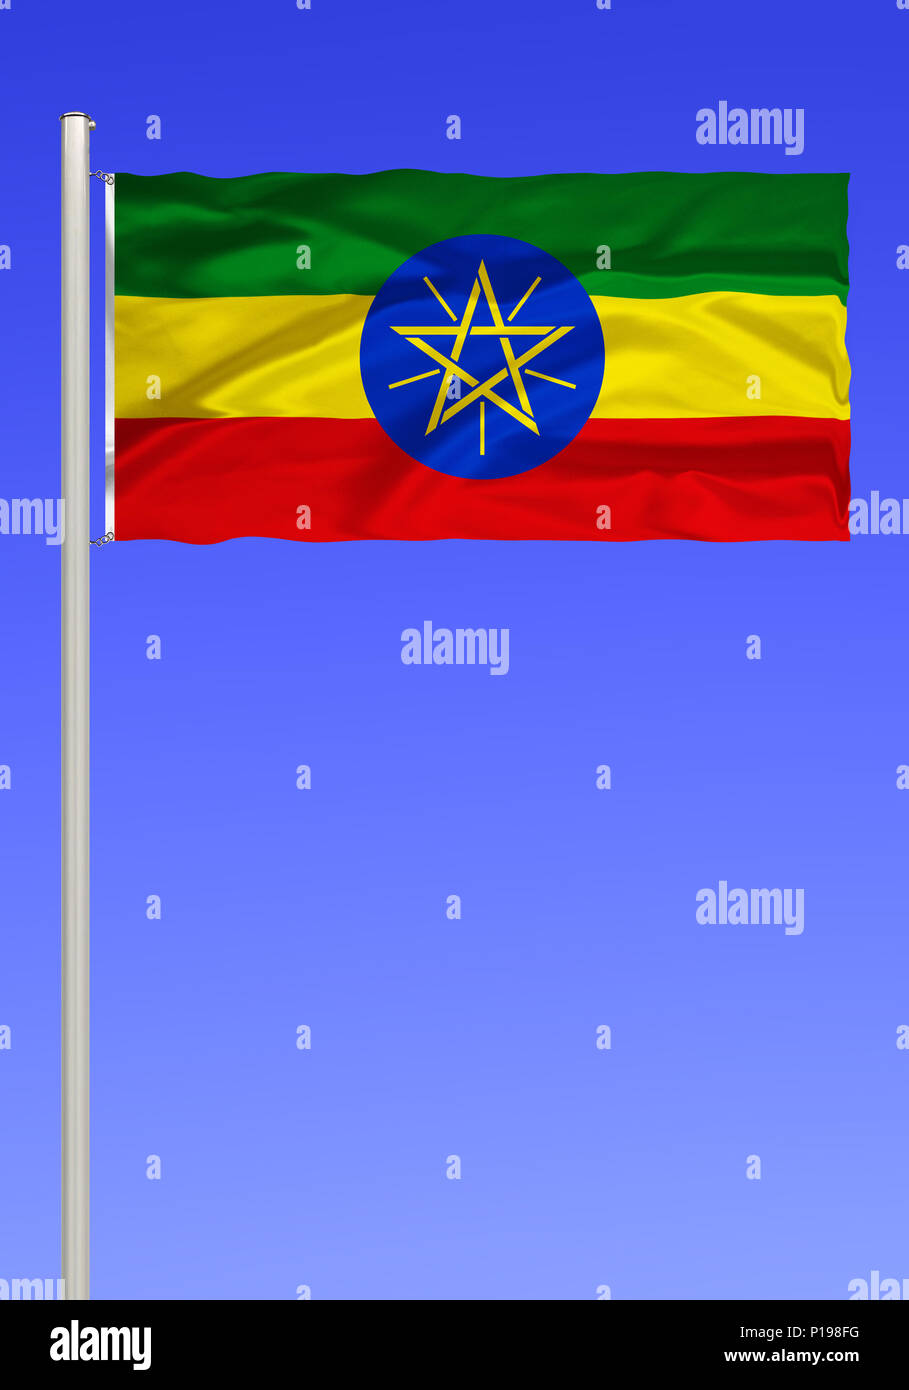 Bandera de Etiopía, país sin litoral en el norte de África, África, anteriormente Abisinia, la capital, Addis Abeba, Flagge von Aethiopien, Binnenstaat en N Foto de stock